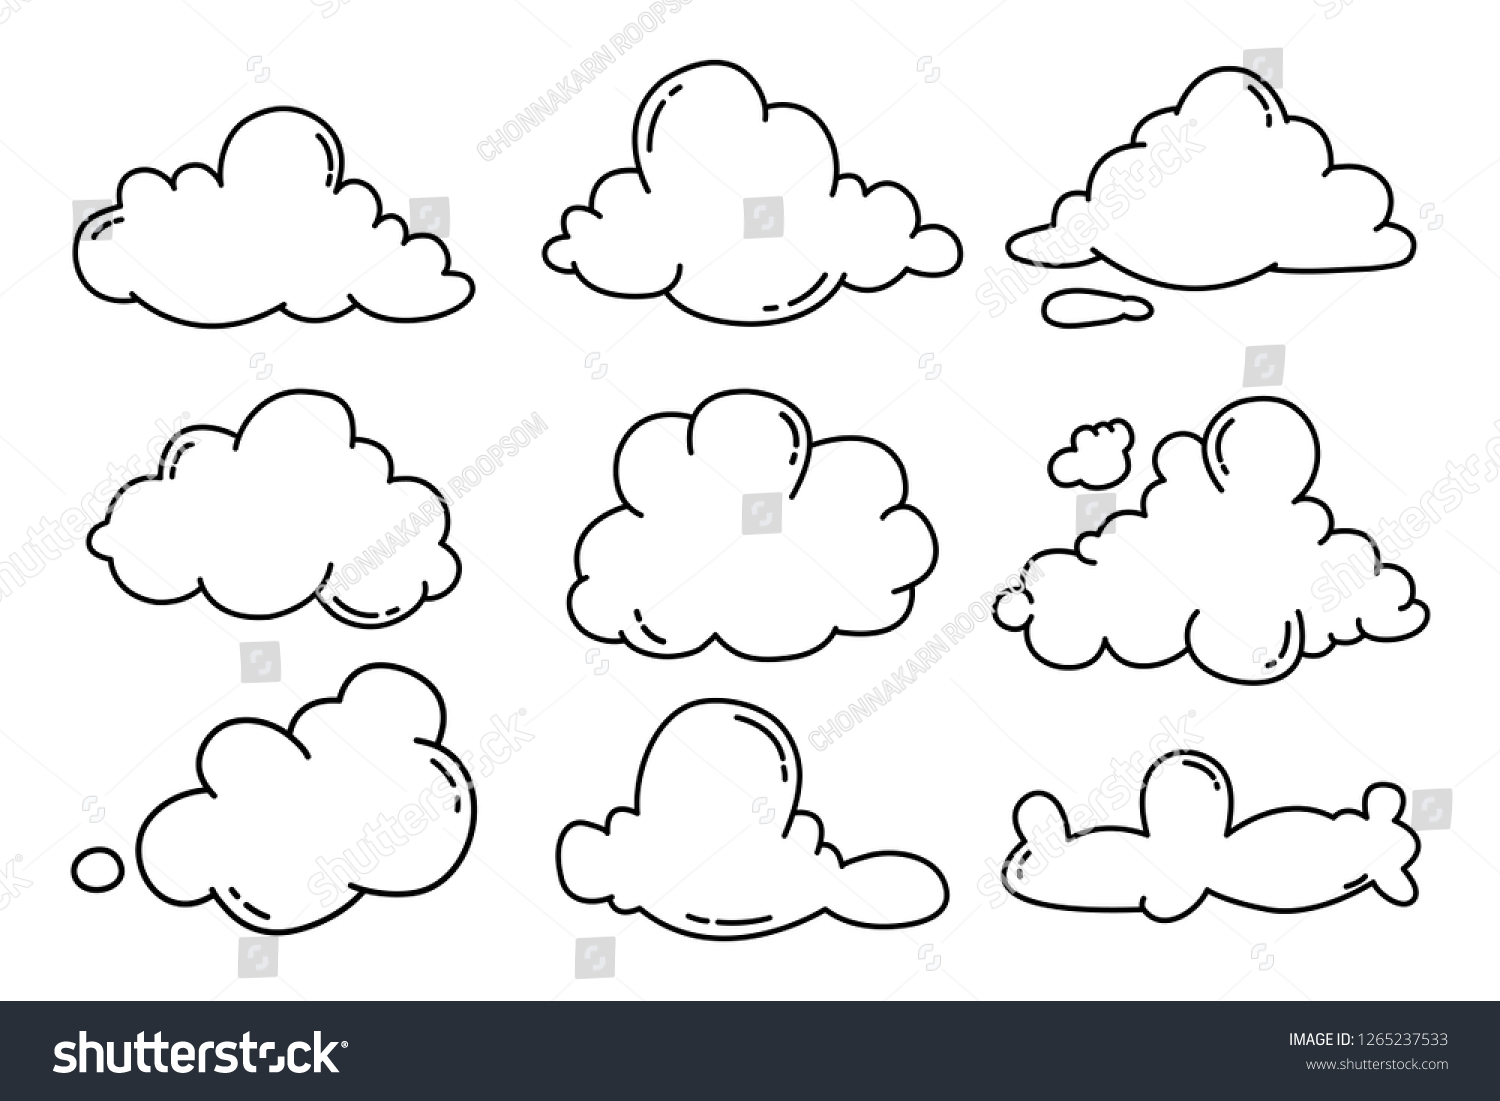 Doodle cloud